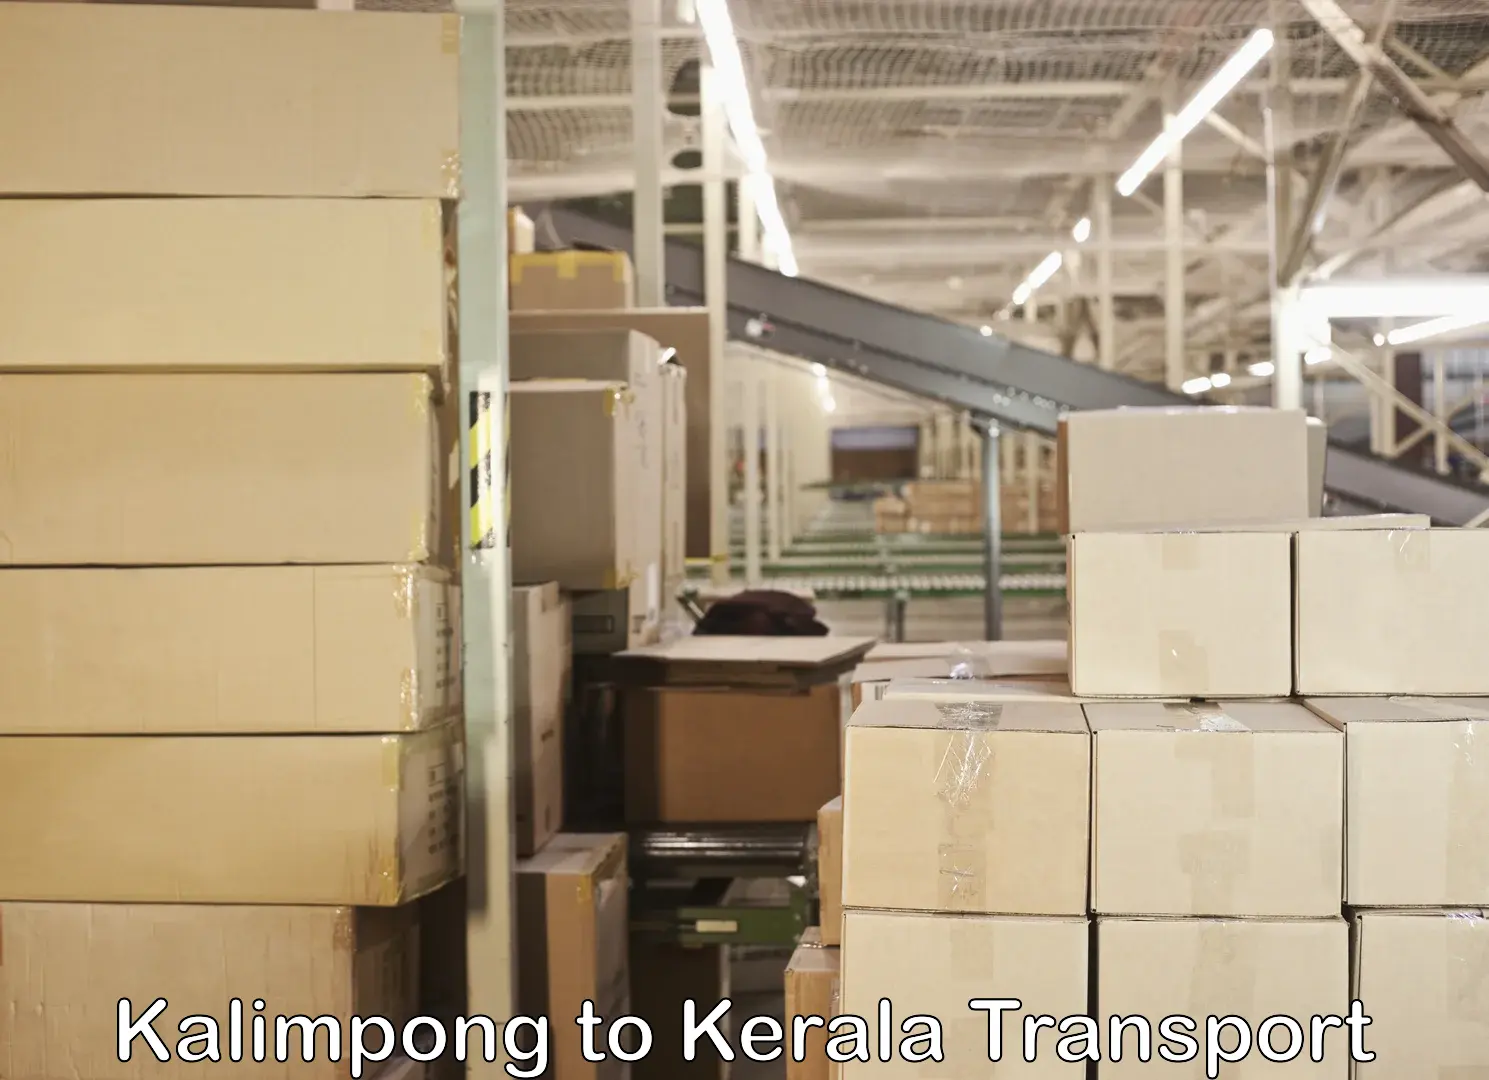 Furniture transport service Kalimpong to Kerala